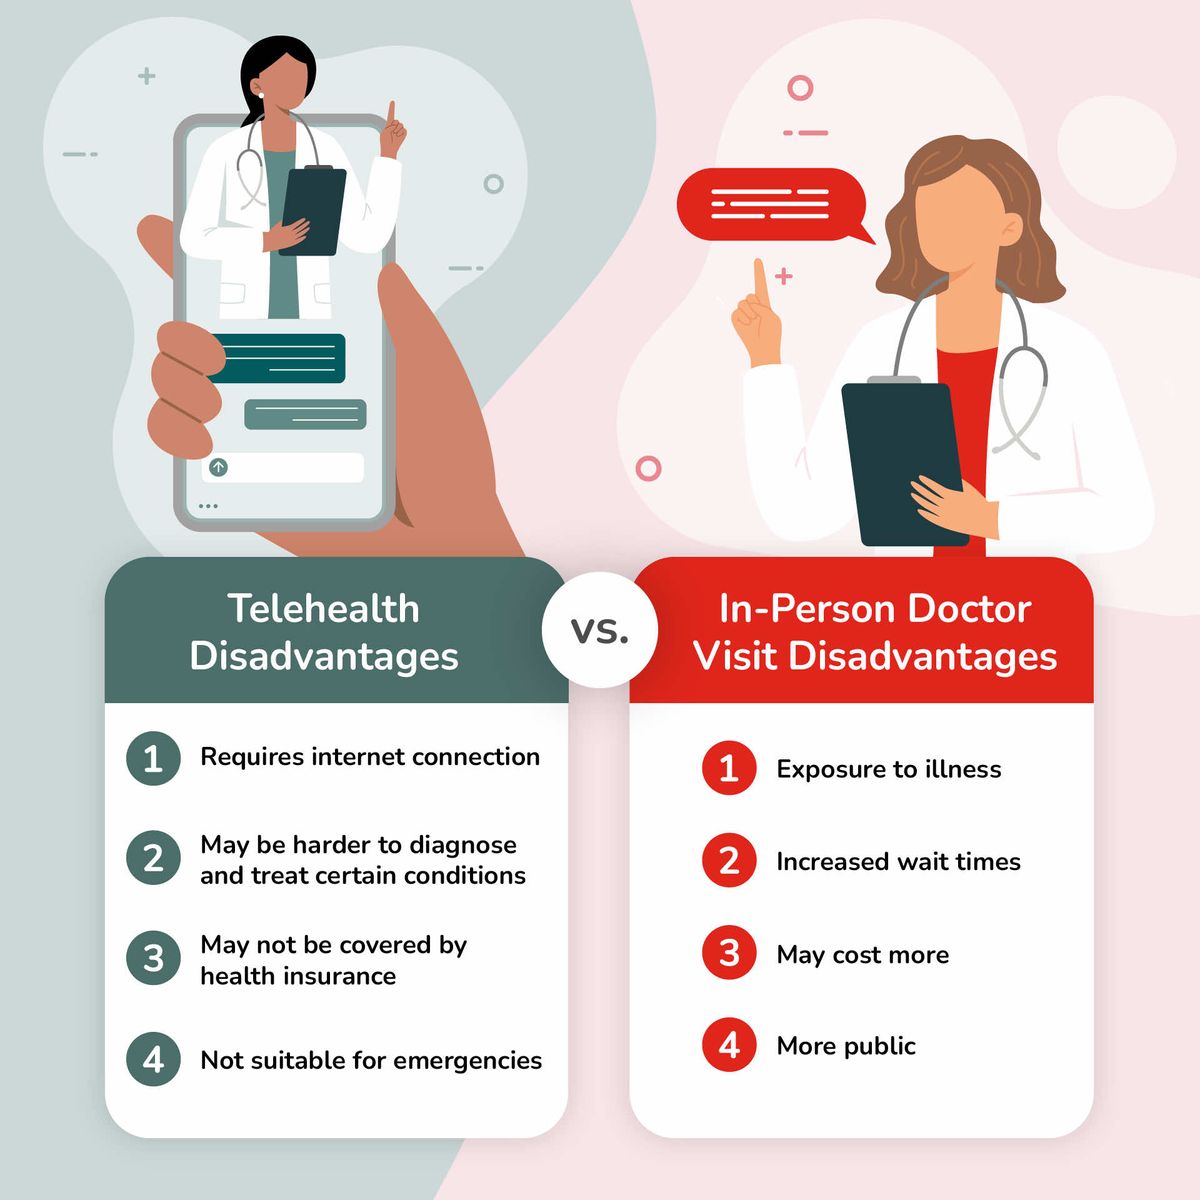 Telehealth Disadvantages vs. In-Person Doctor Visit Disadvantages Comparison